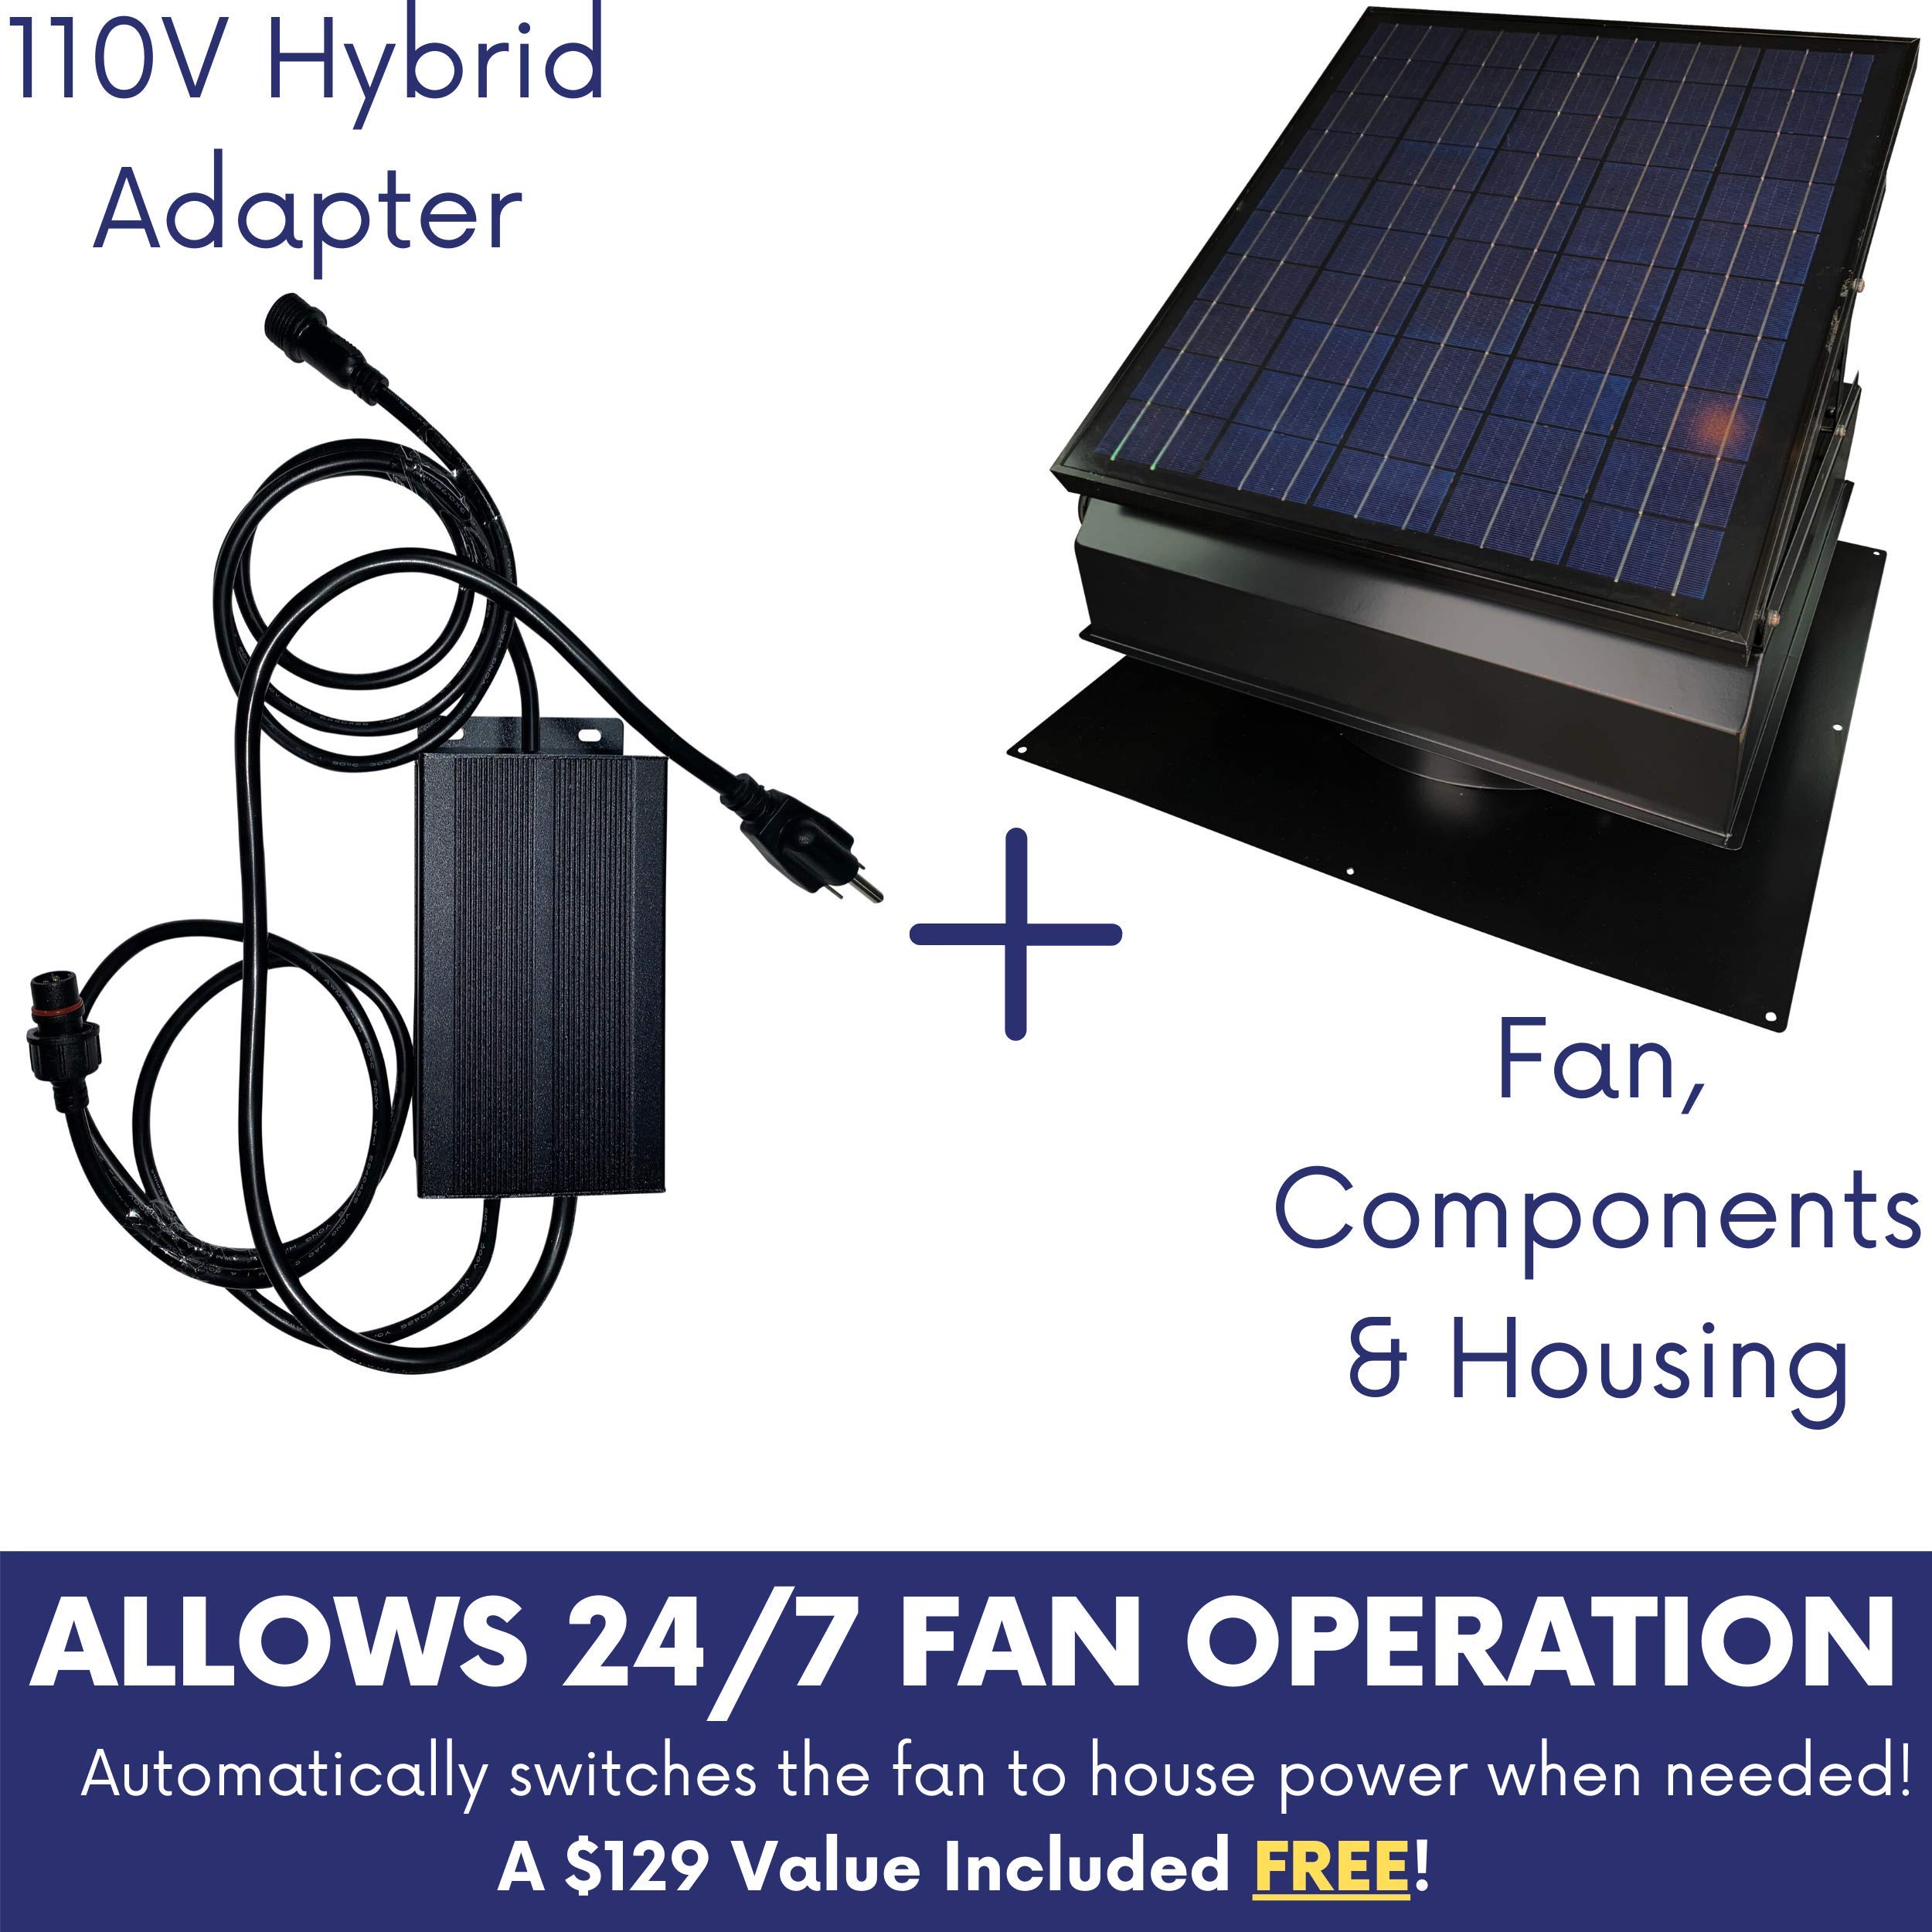 Remington Solar 40 Watt/ 38V Roof Mount Solar Attic Fan with 110V smart adapter